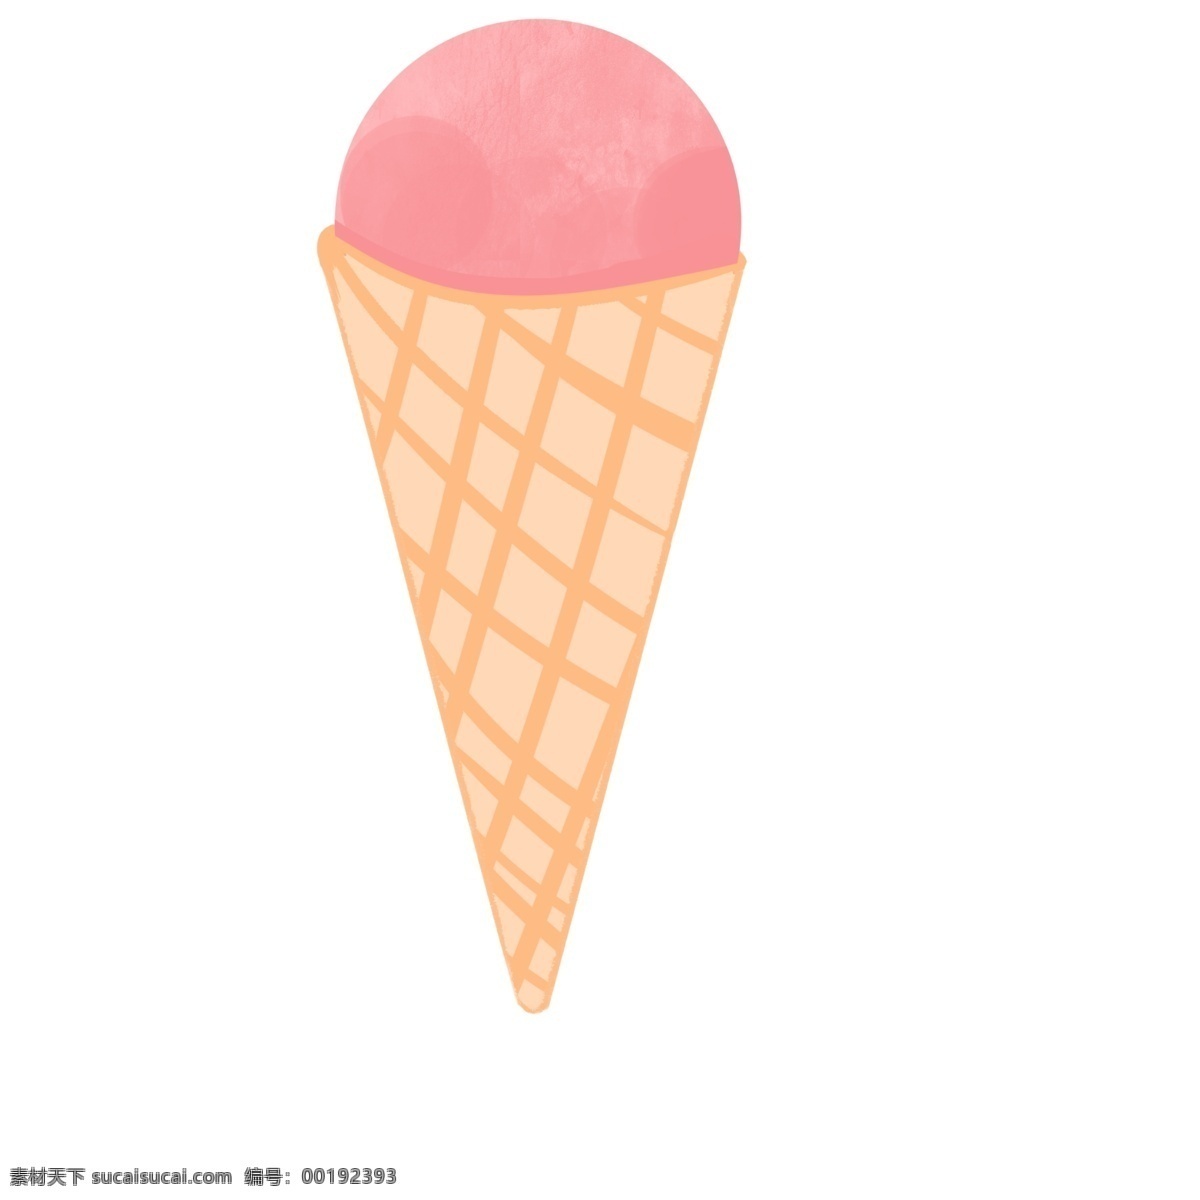 粉色甜筒 雪糕 卡通 夏日 凉爽 简洁 手绘